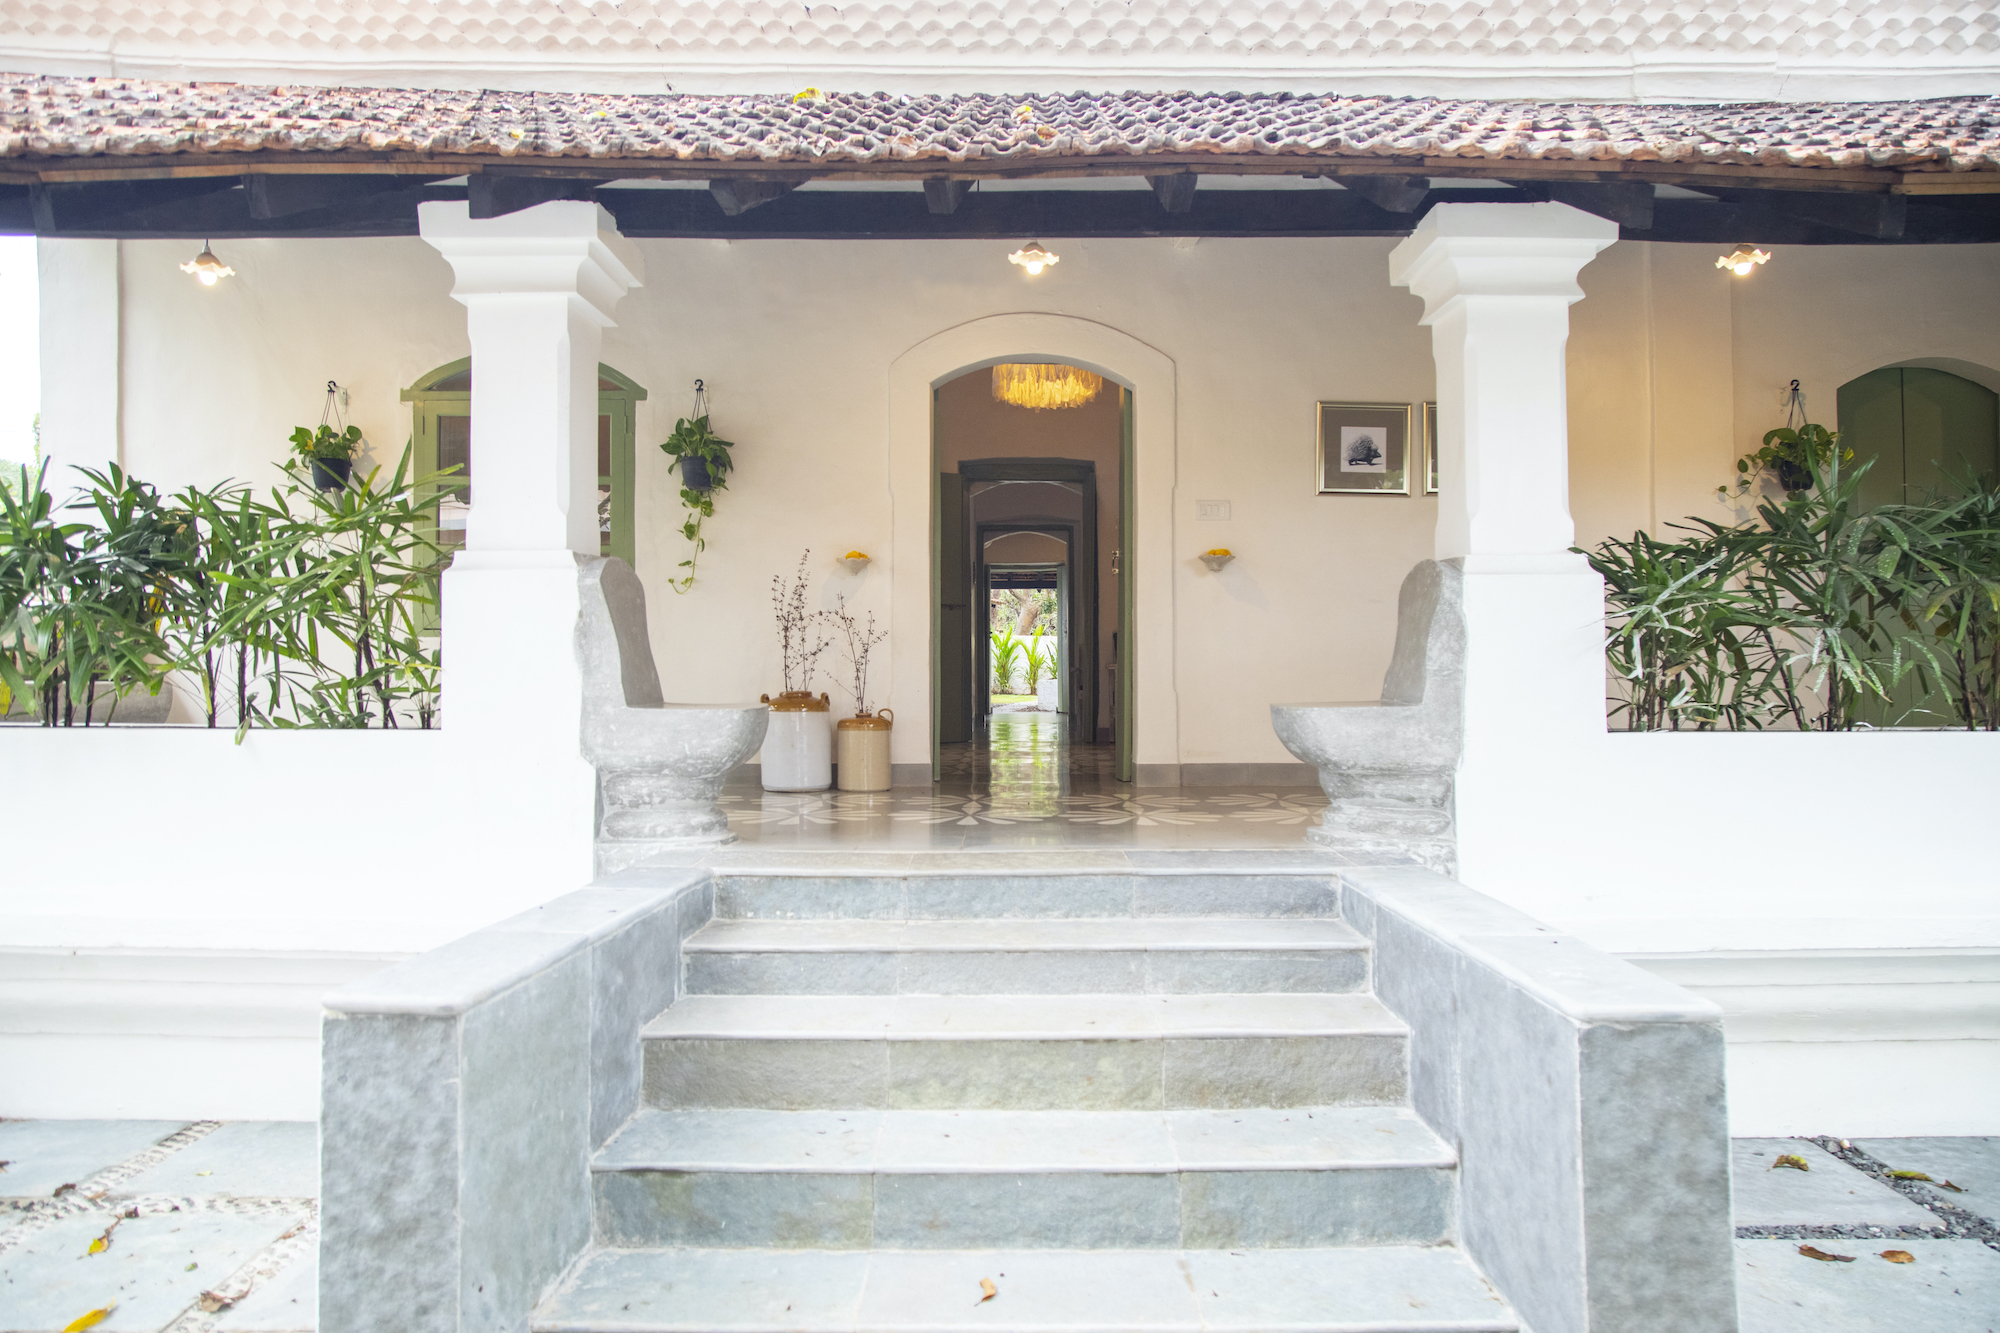 Casa Gracia, a 133-year-old Goan villa, was restored by architect Rochelle Santimano - Effect Magazine